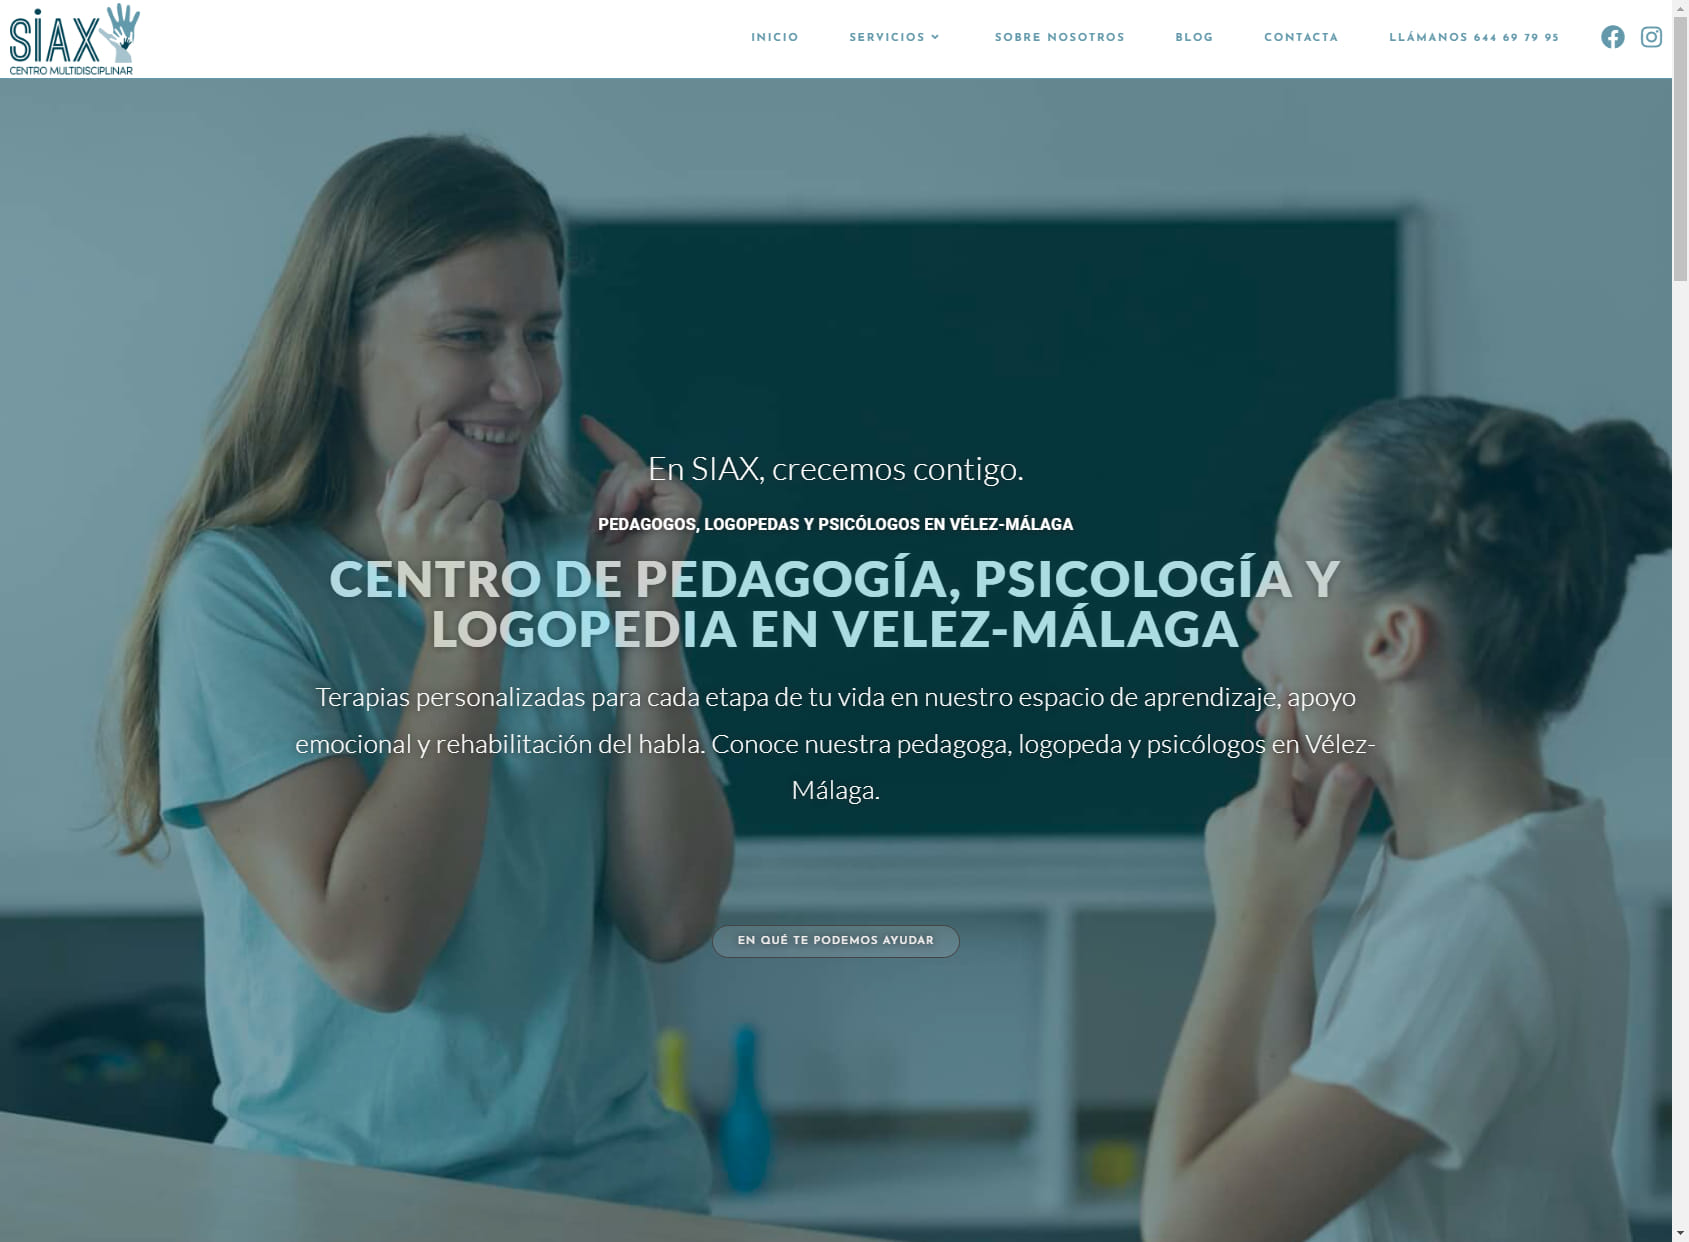 Centro SIAX - Pedagogía, psicología y logopedia en Vélez-Málaga